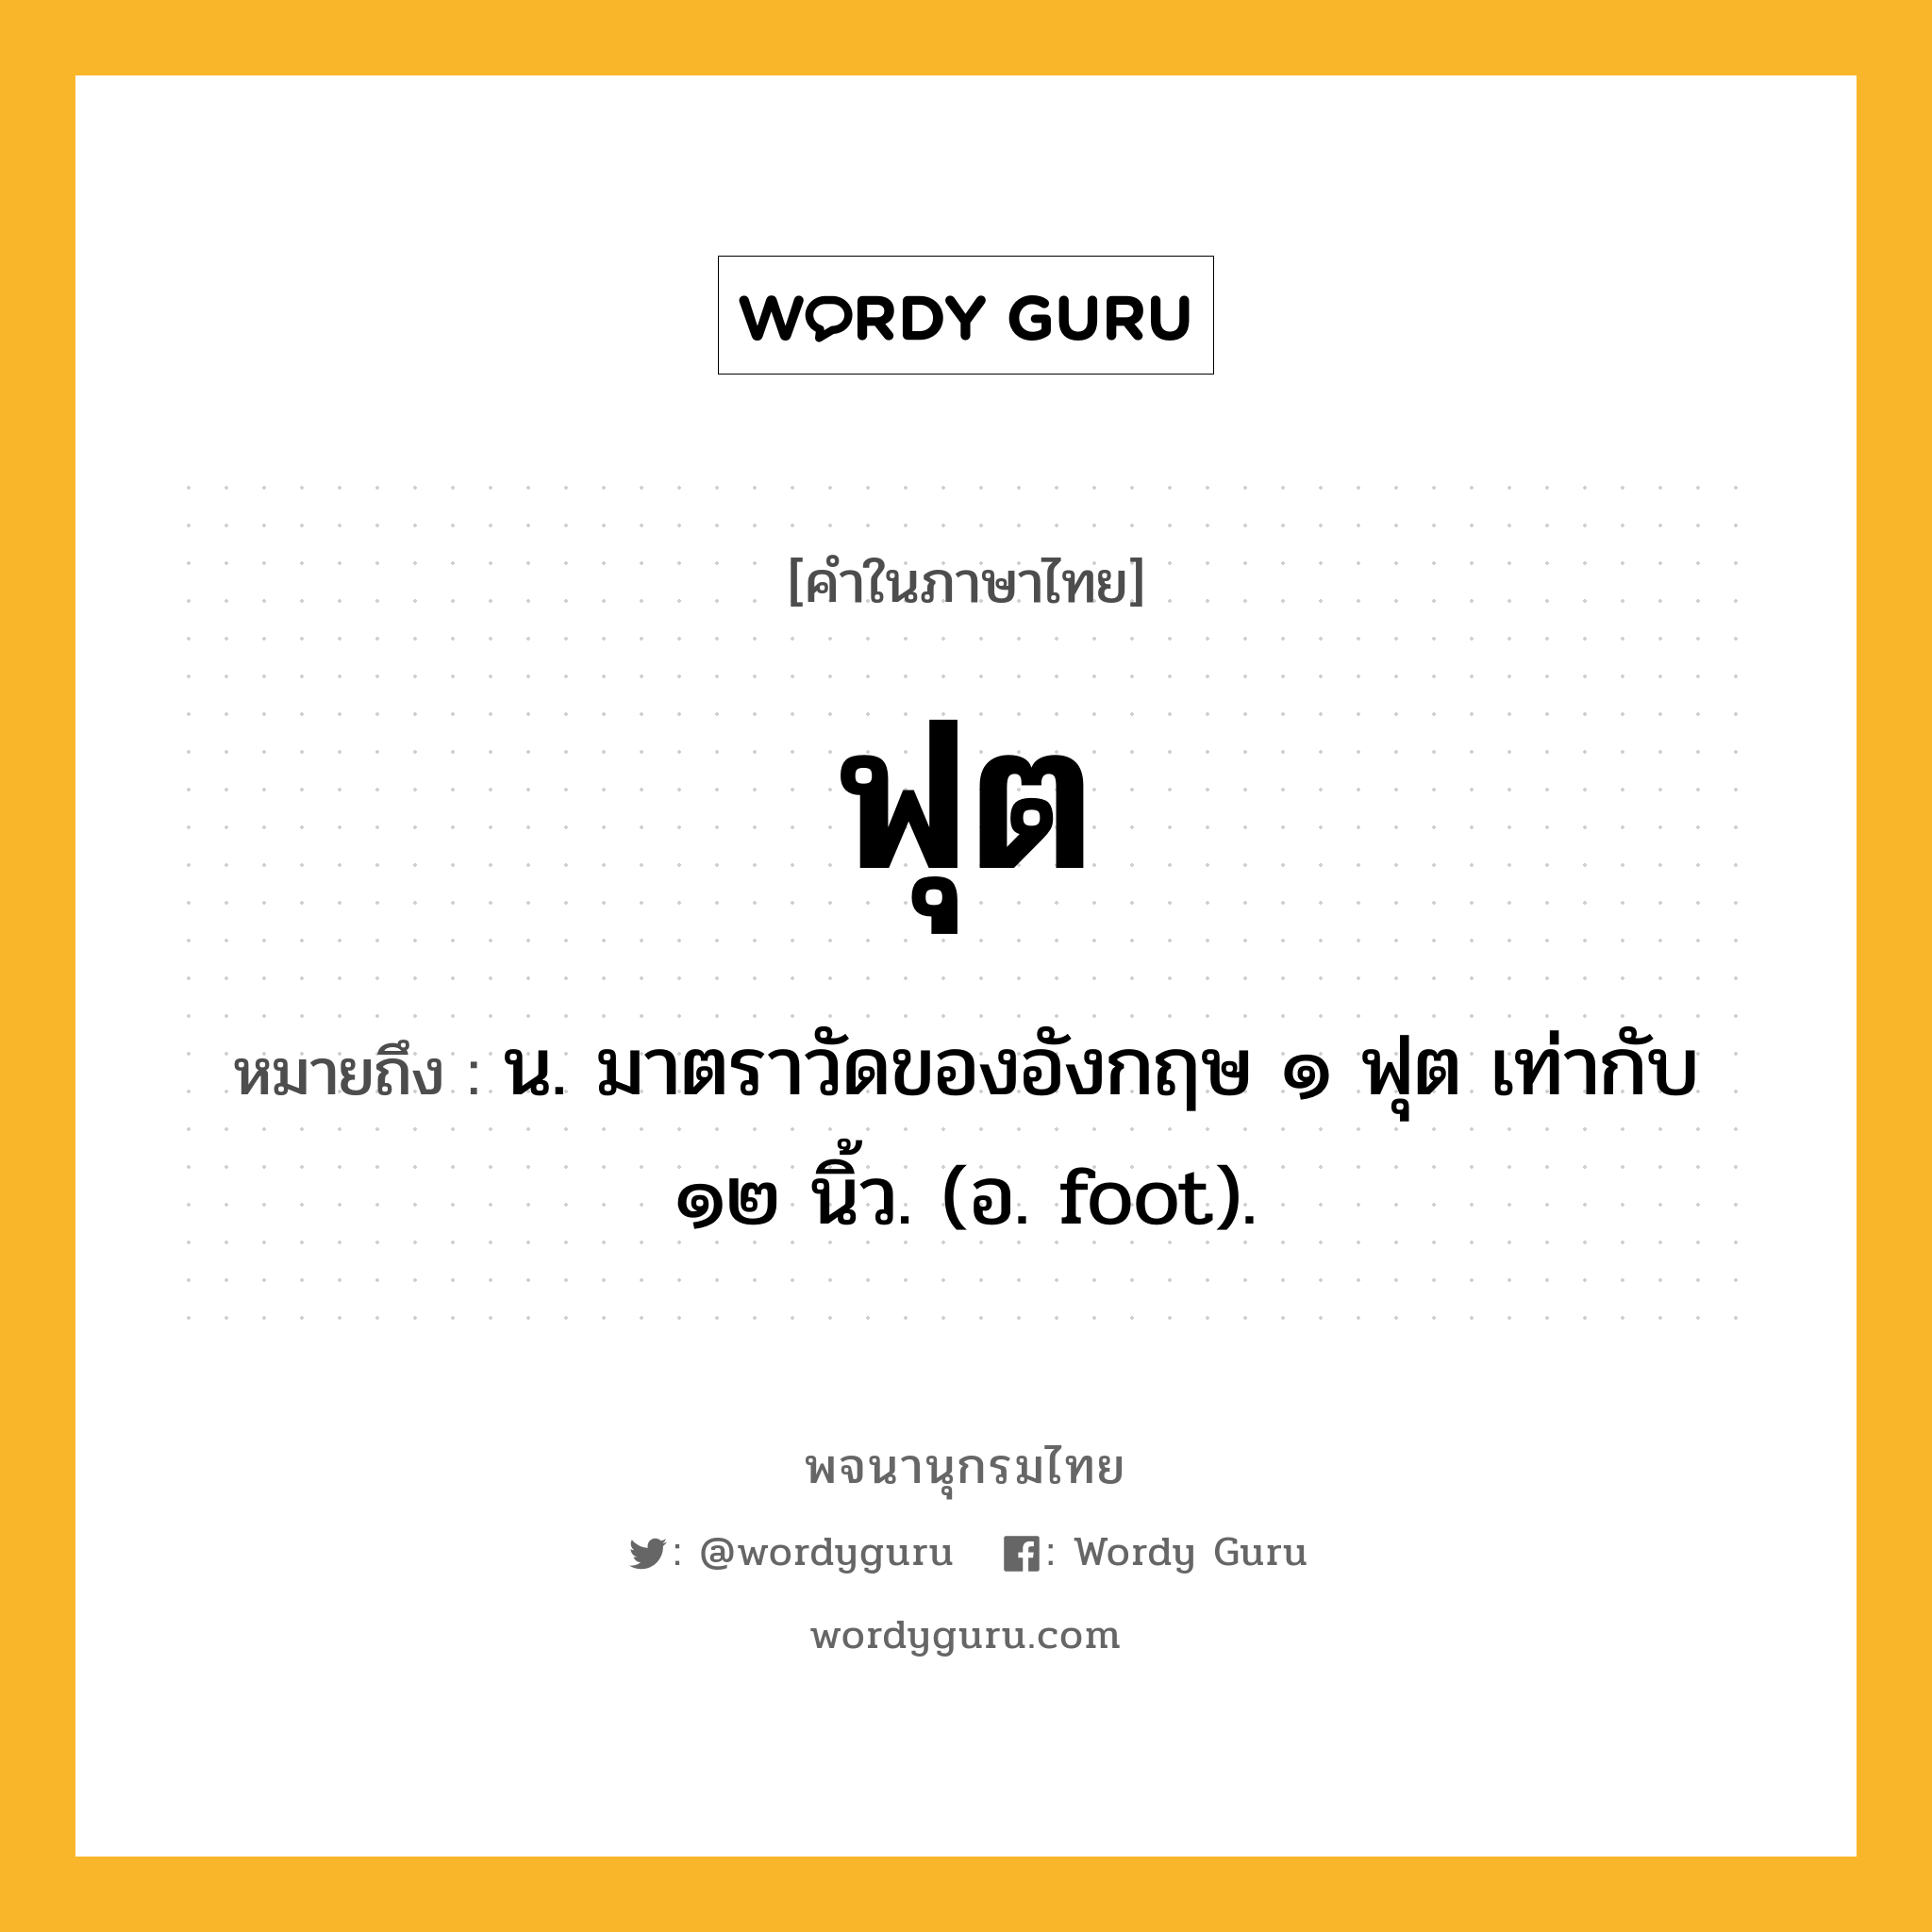 ฟุต หมายถึงอะไร?, คำในภาษาไทย ฟุต หมายถึง น. มาตราวัดของอังกฤษ ๑ ฟุต เท่ากับ ๑๒ นิ้ว. (อ. foot).